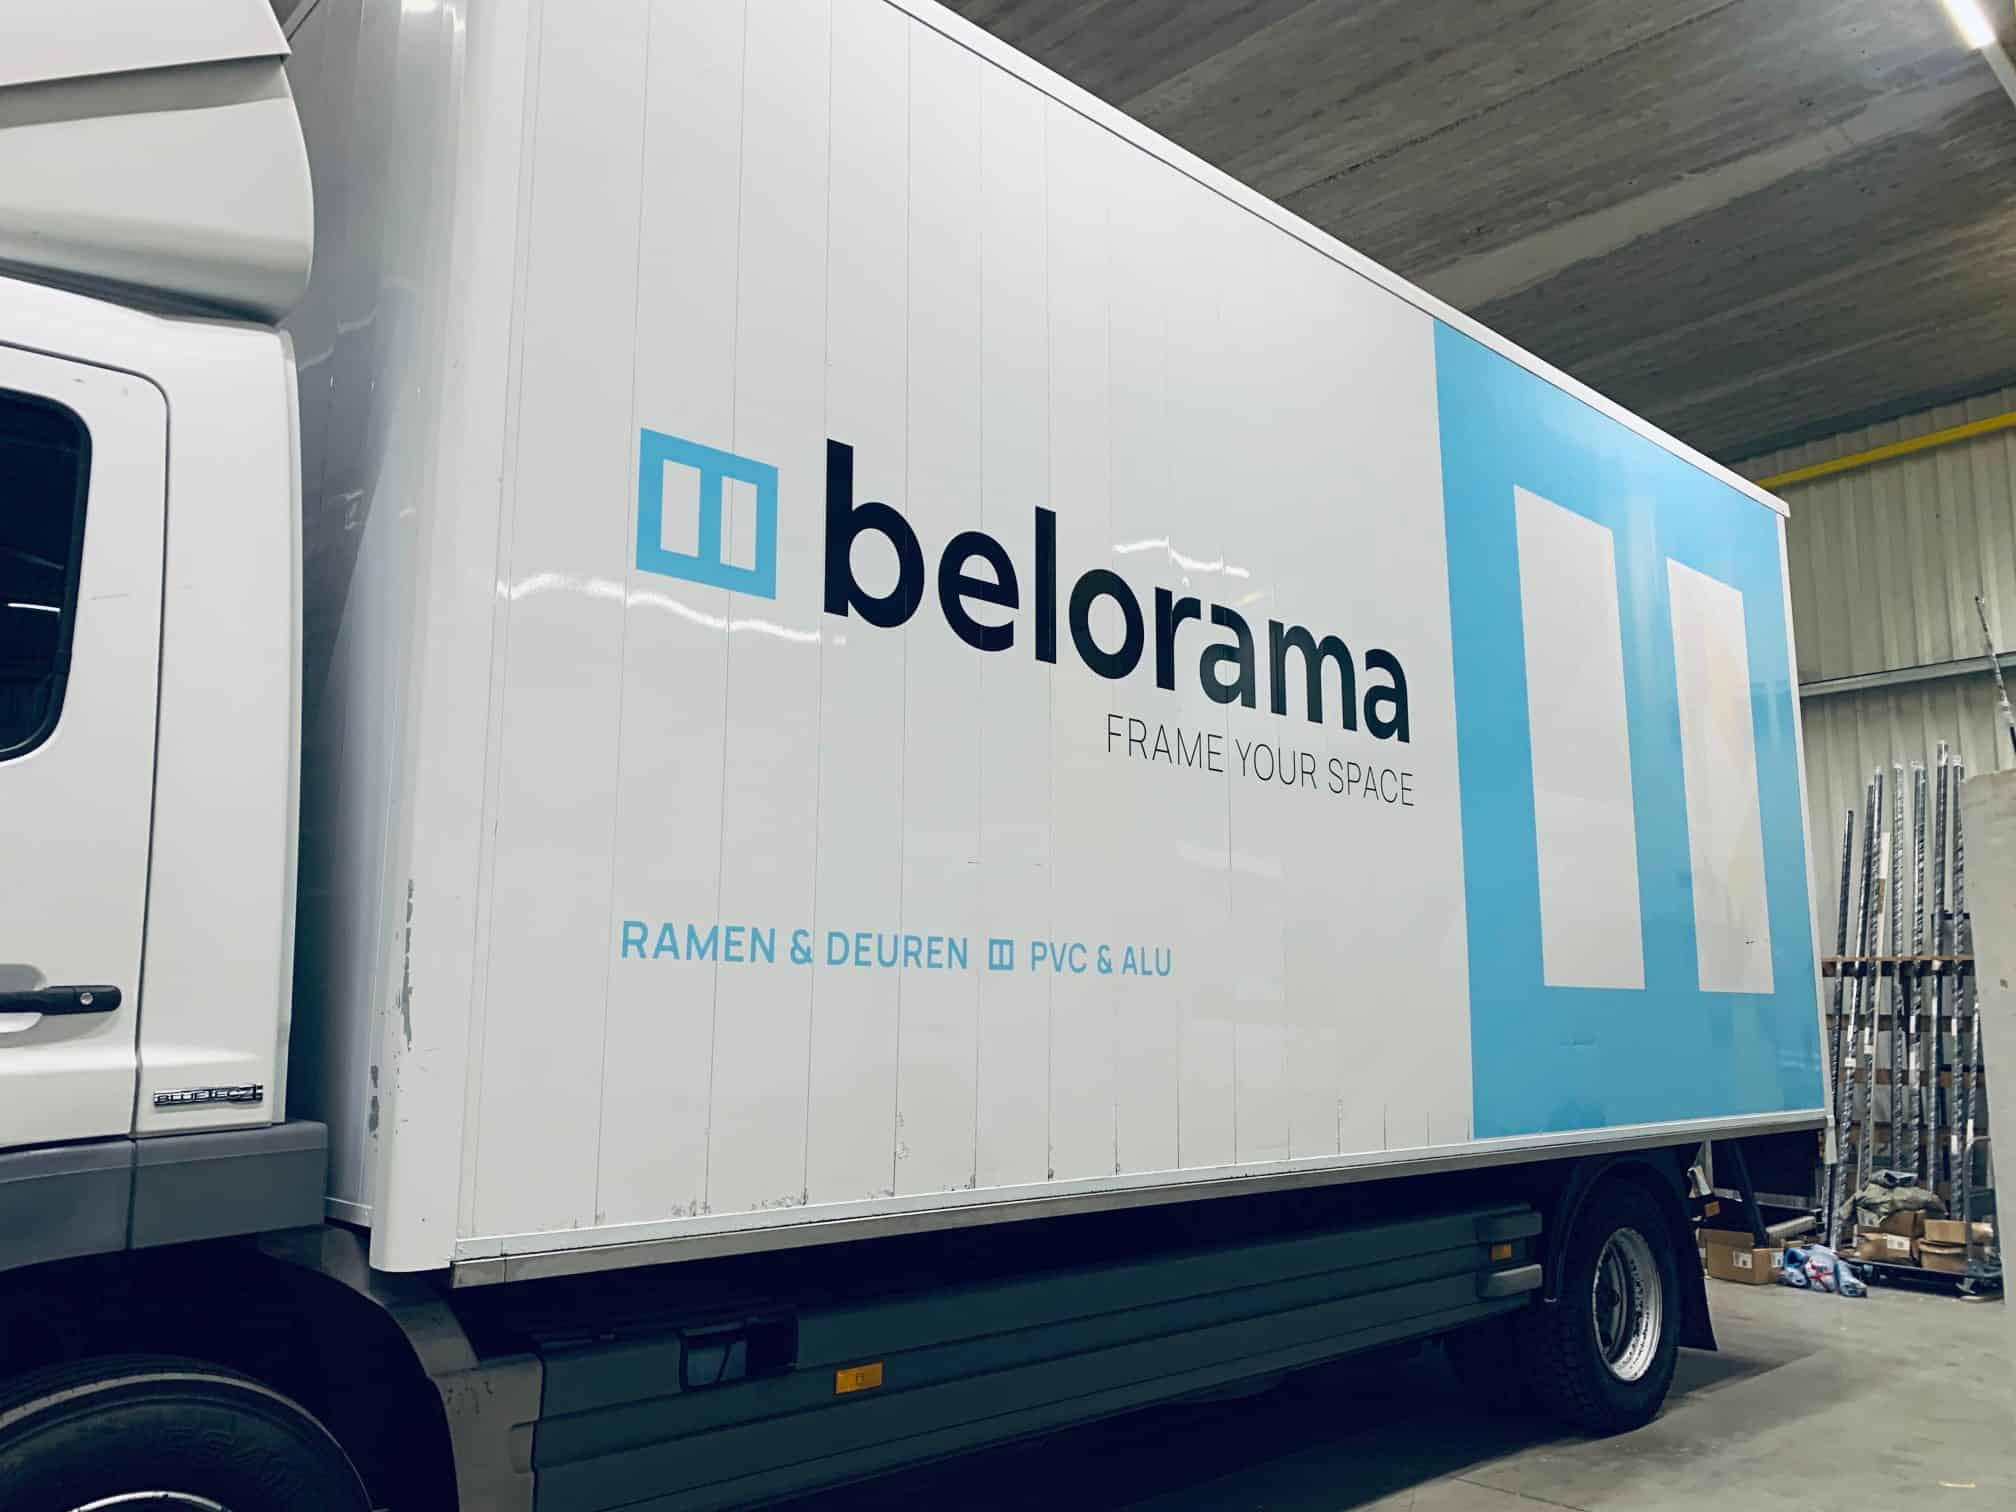 Belettering vrachtwagen voor Belorama